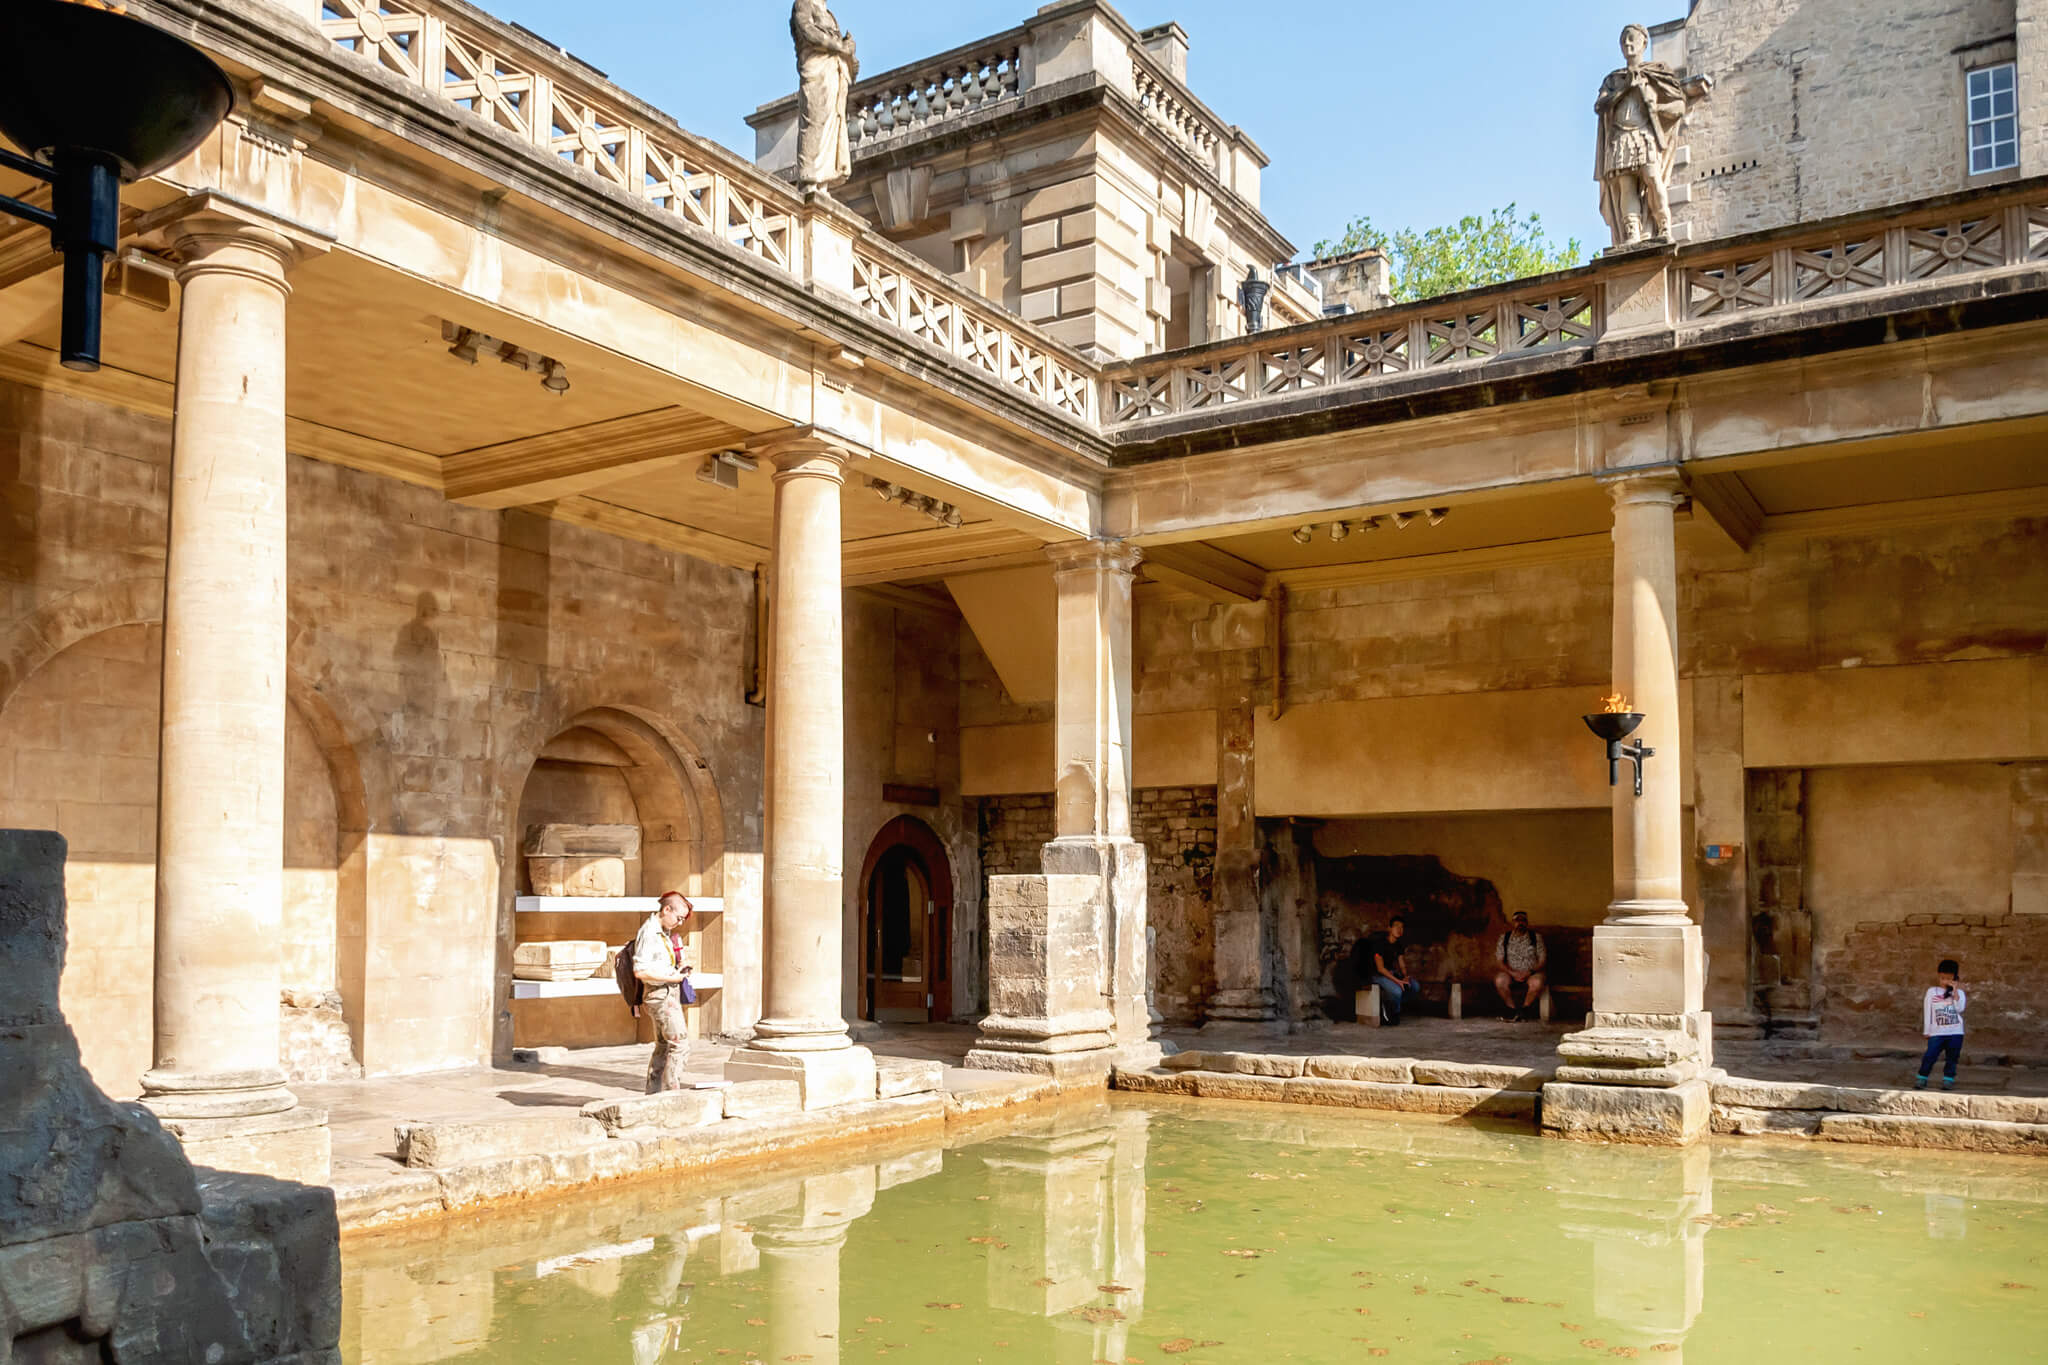 Tour of the ancient roman baths